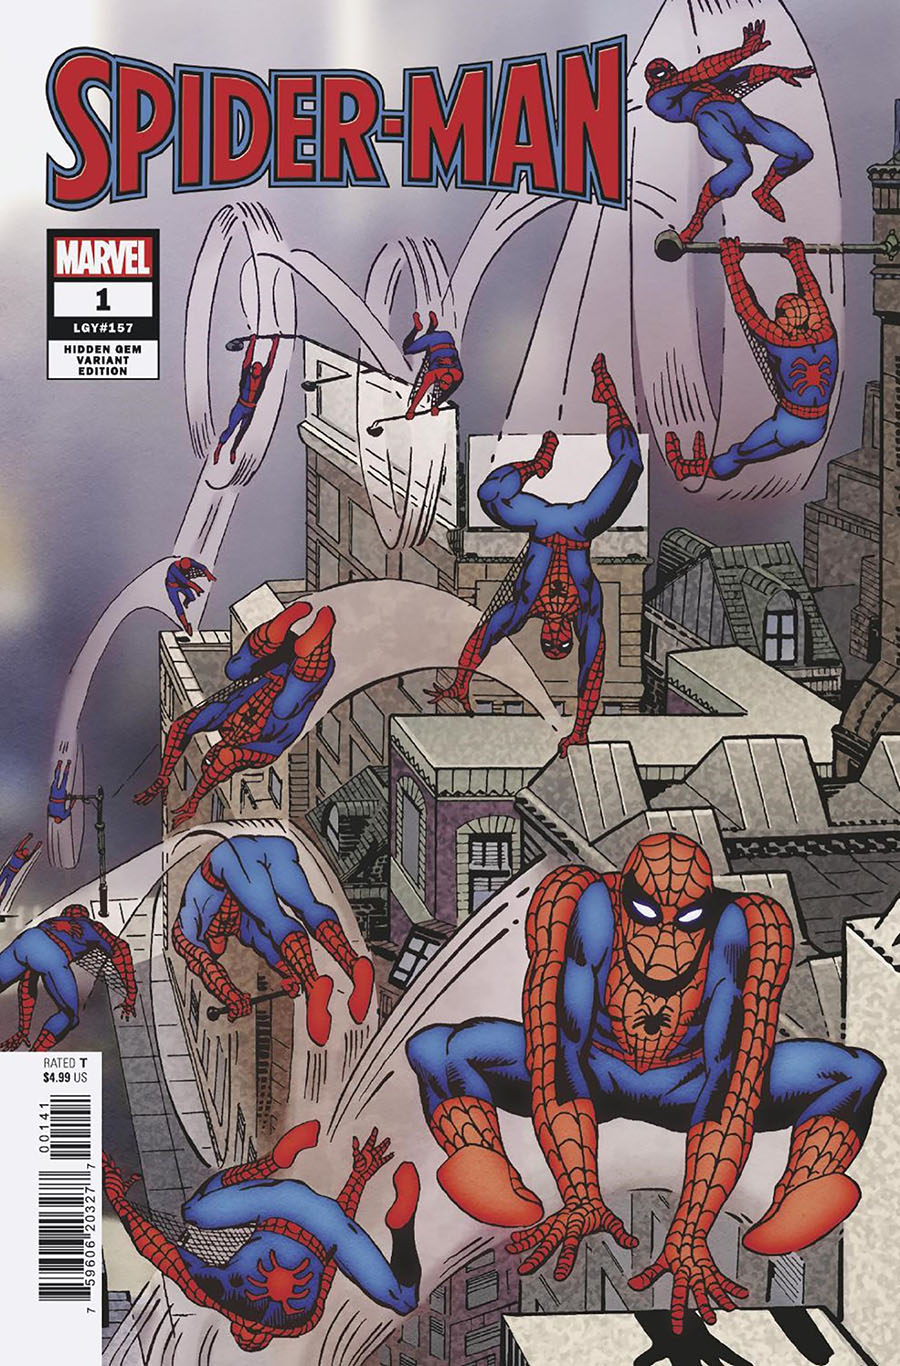 Spider-Man Vol 4 #1 Cover J Incentive Steve Ditko Hidden Gem Variant Cover